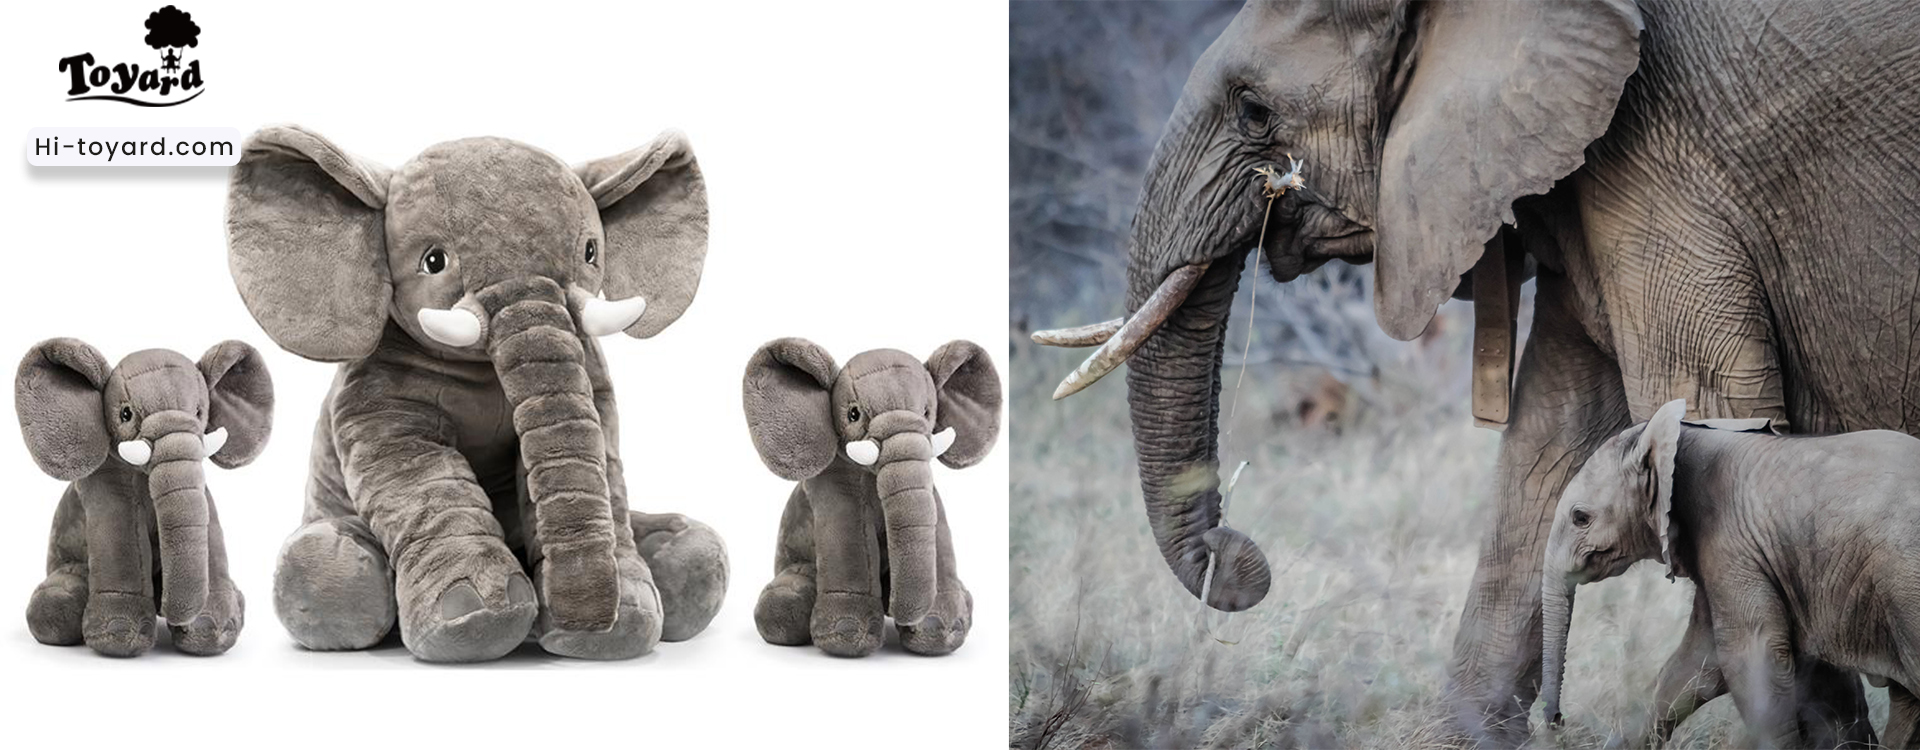 Toyard elephant stuffed animals to raise awareness of elephant conservation 